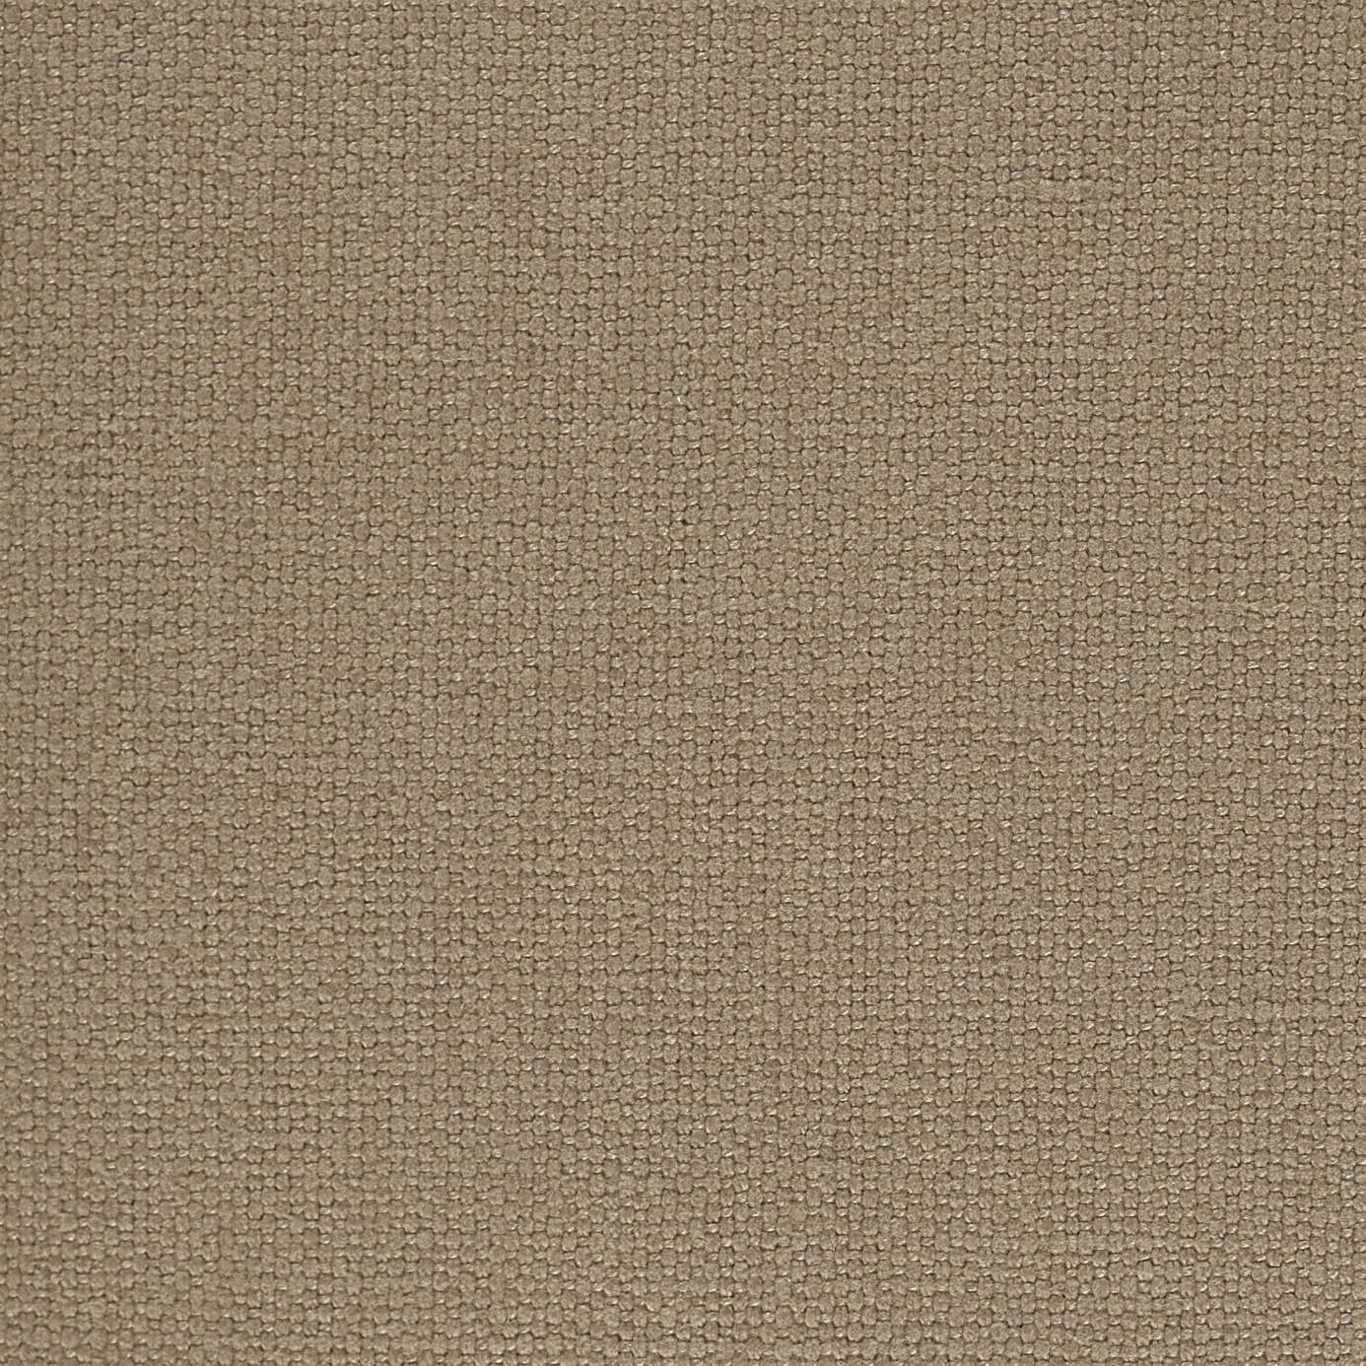 Quadrant Walnut Fabric by HAR